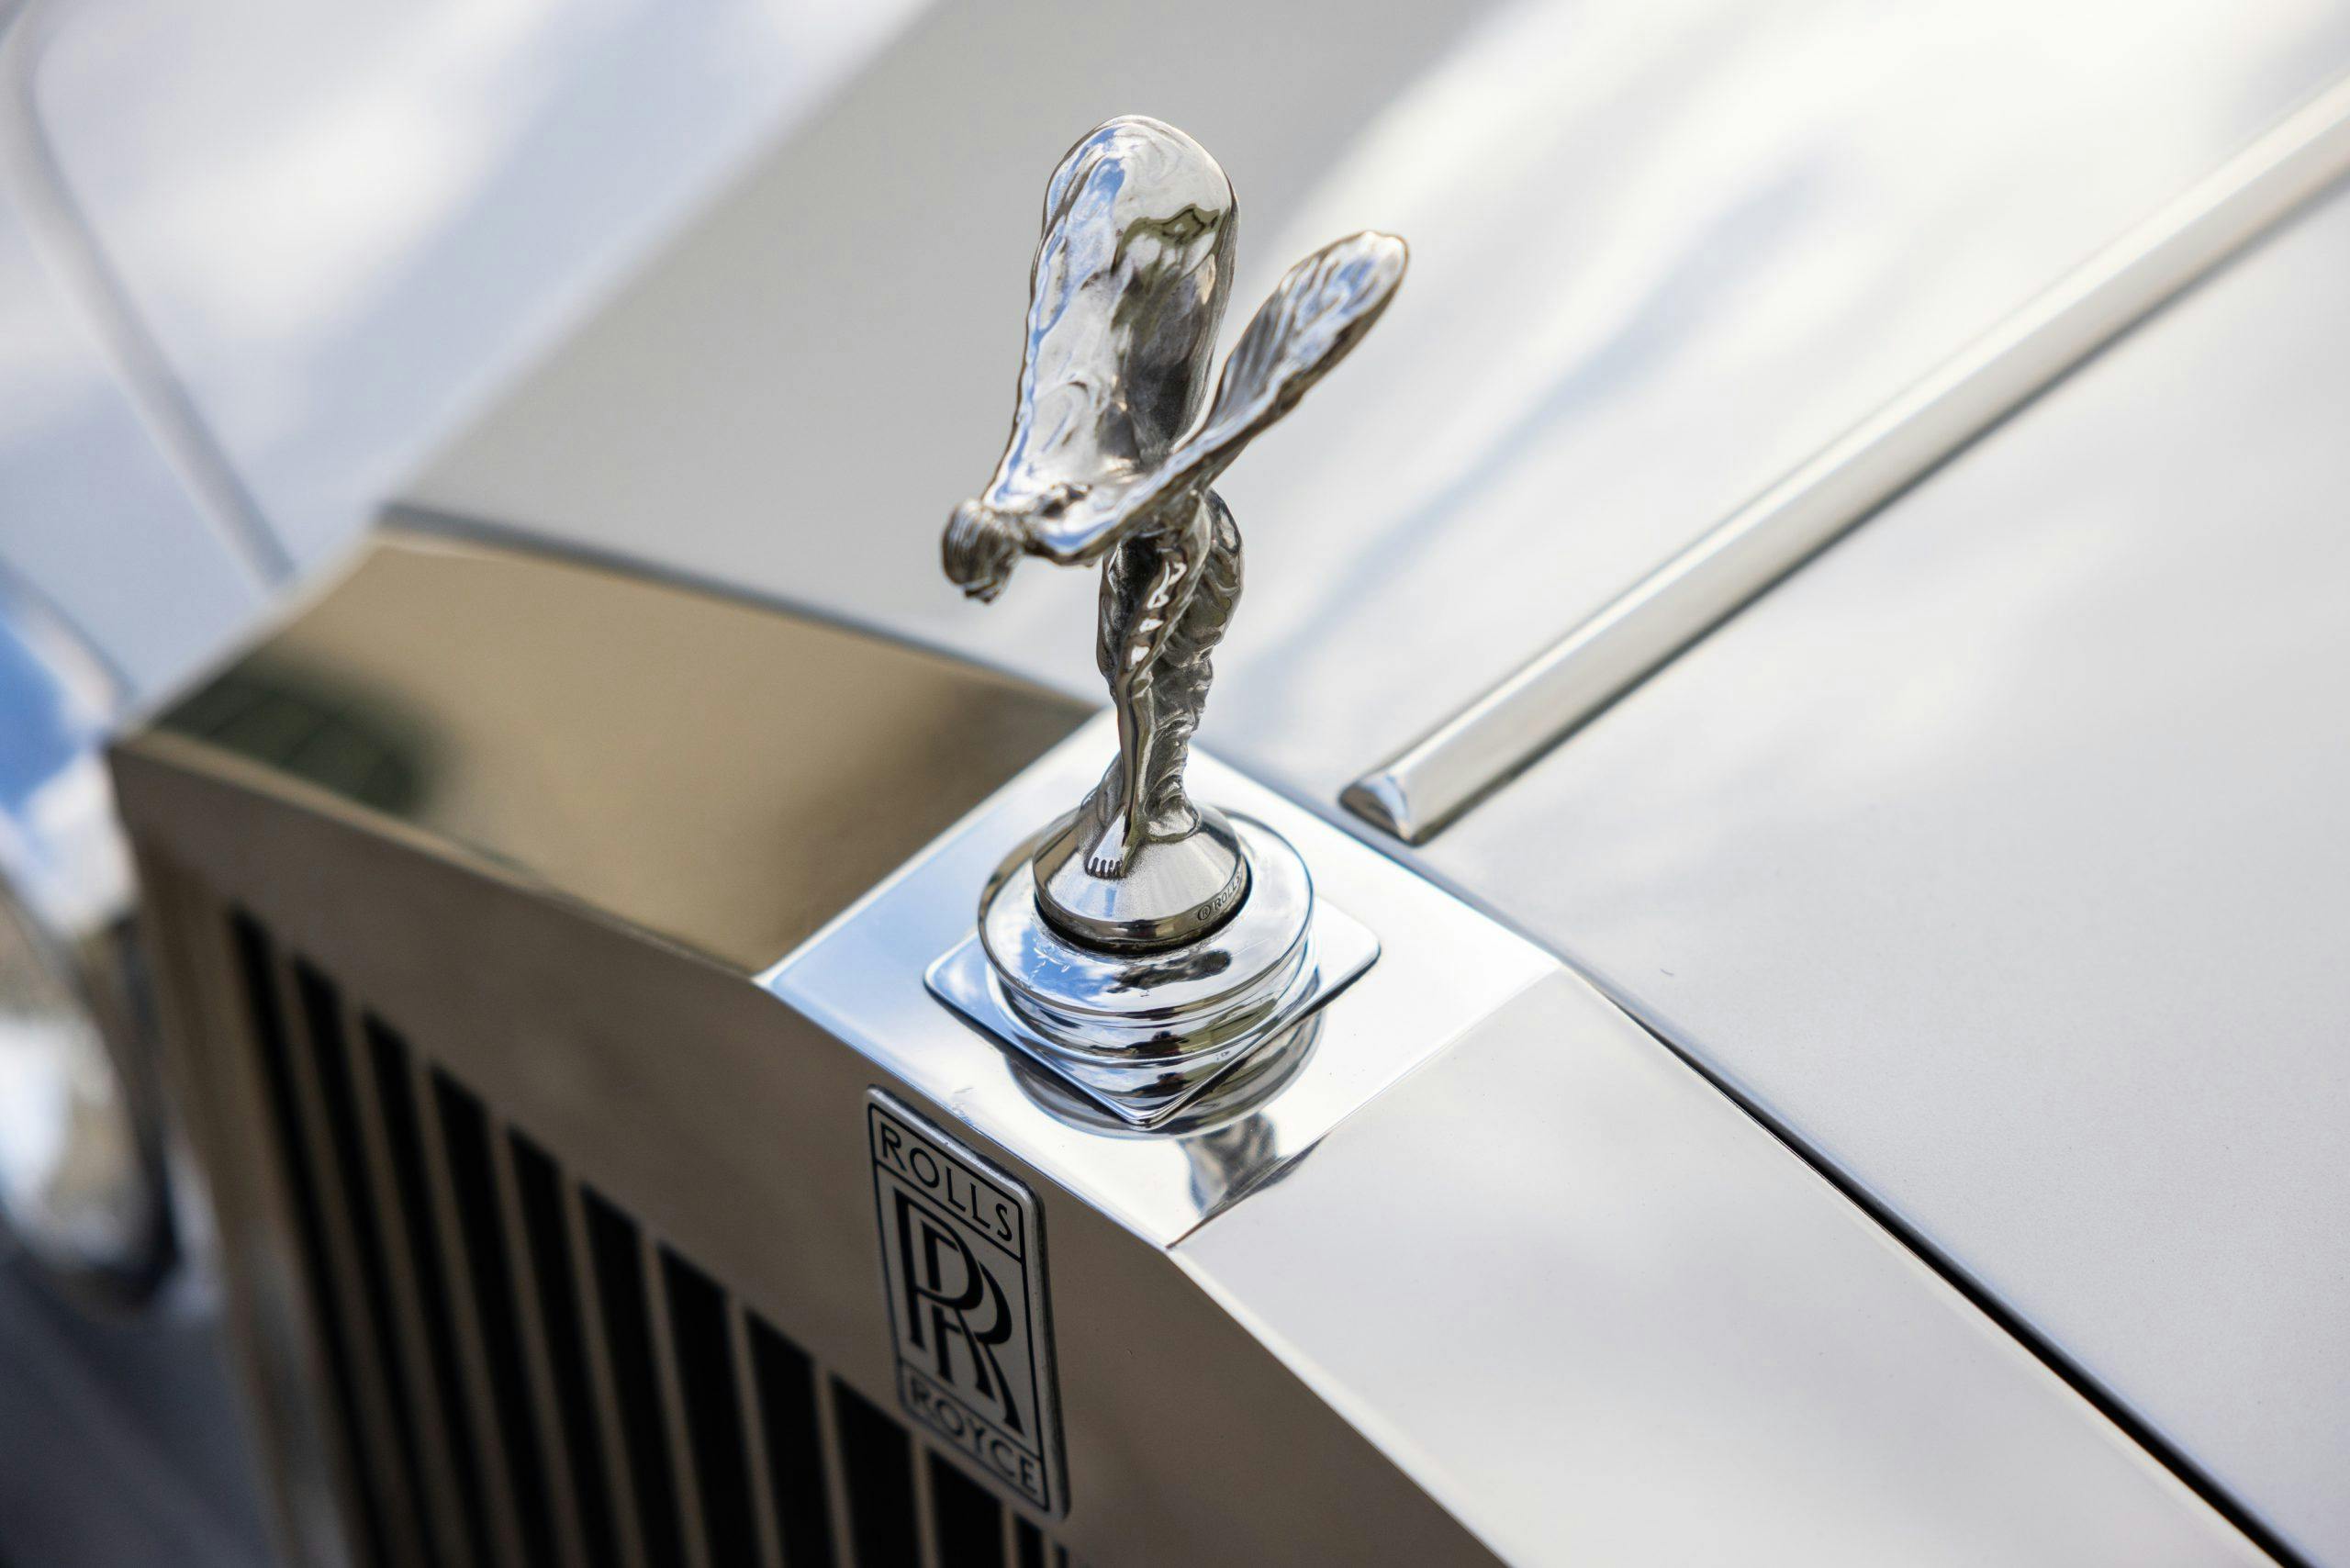 Freddy Mercury 1974 Rolls Royce Silver Shadow hood ornament